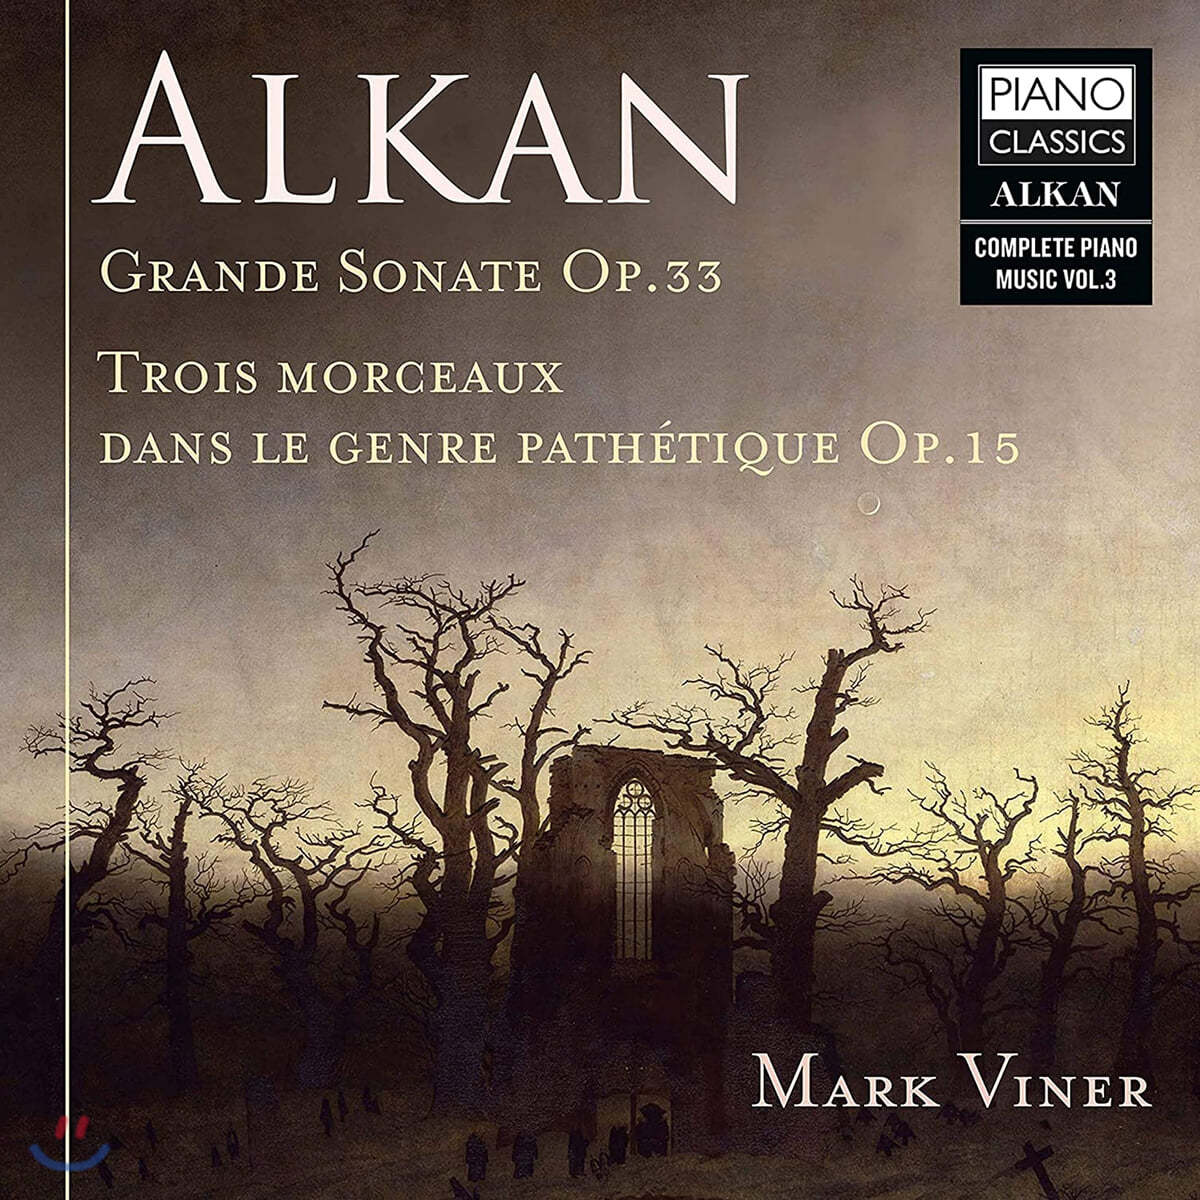 Mark Viner 알캉: 그랜드 소나타, 4개의 세대, 죽음 (Alkan: Grande Sonata, Trois Morceaux dans le genre pathetique